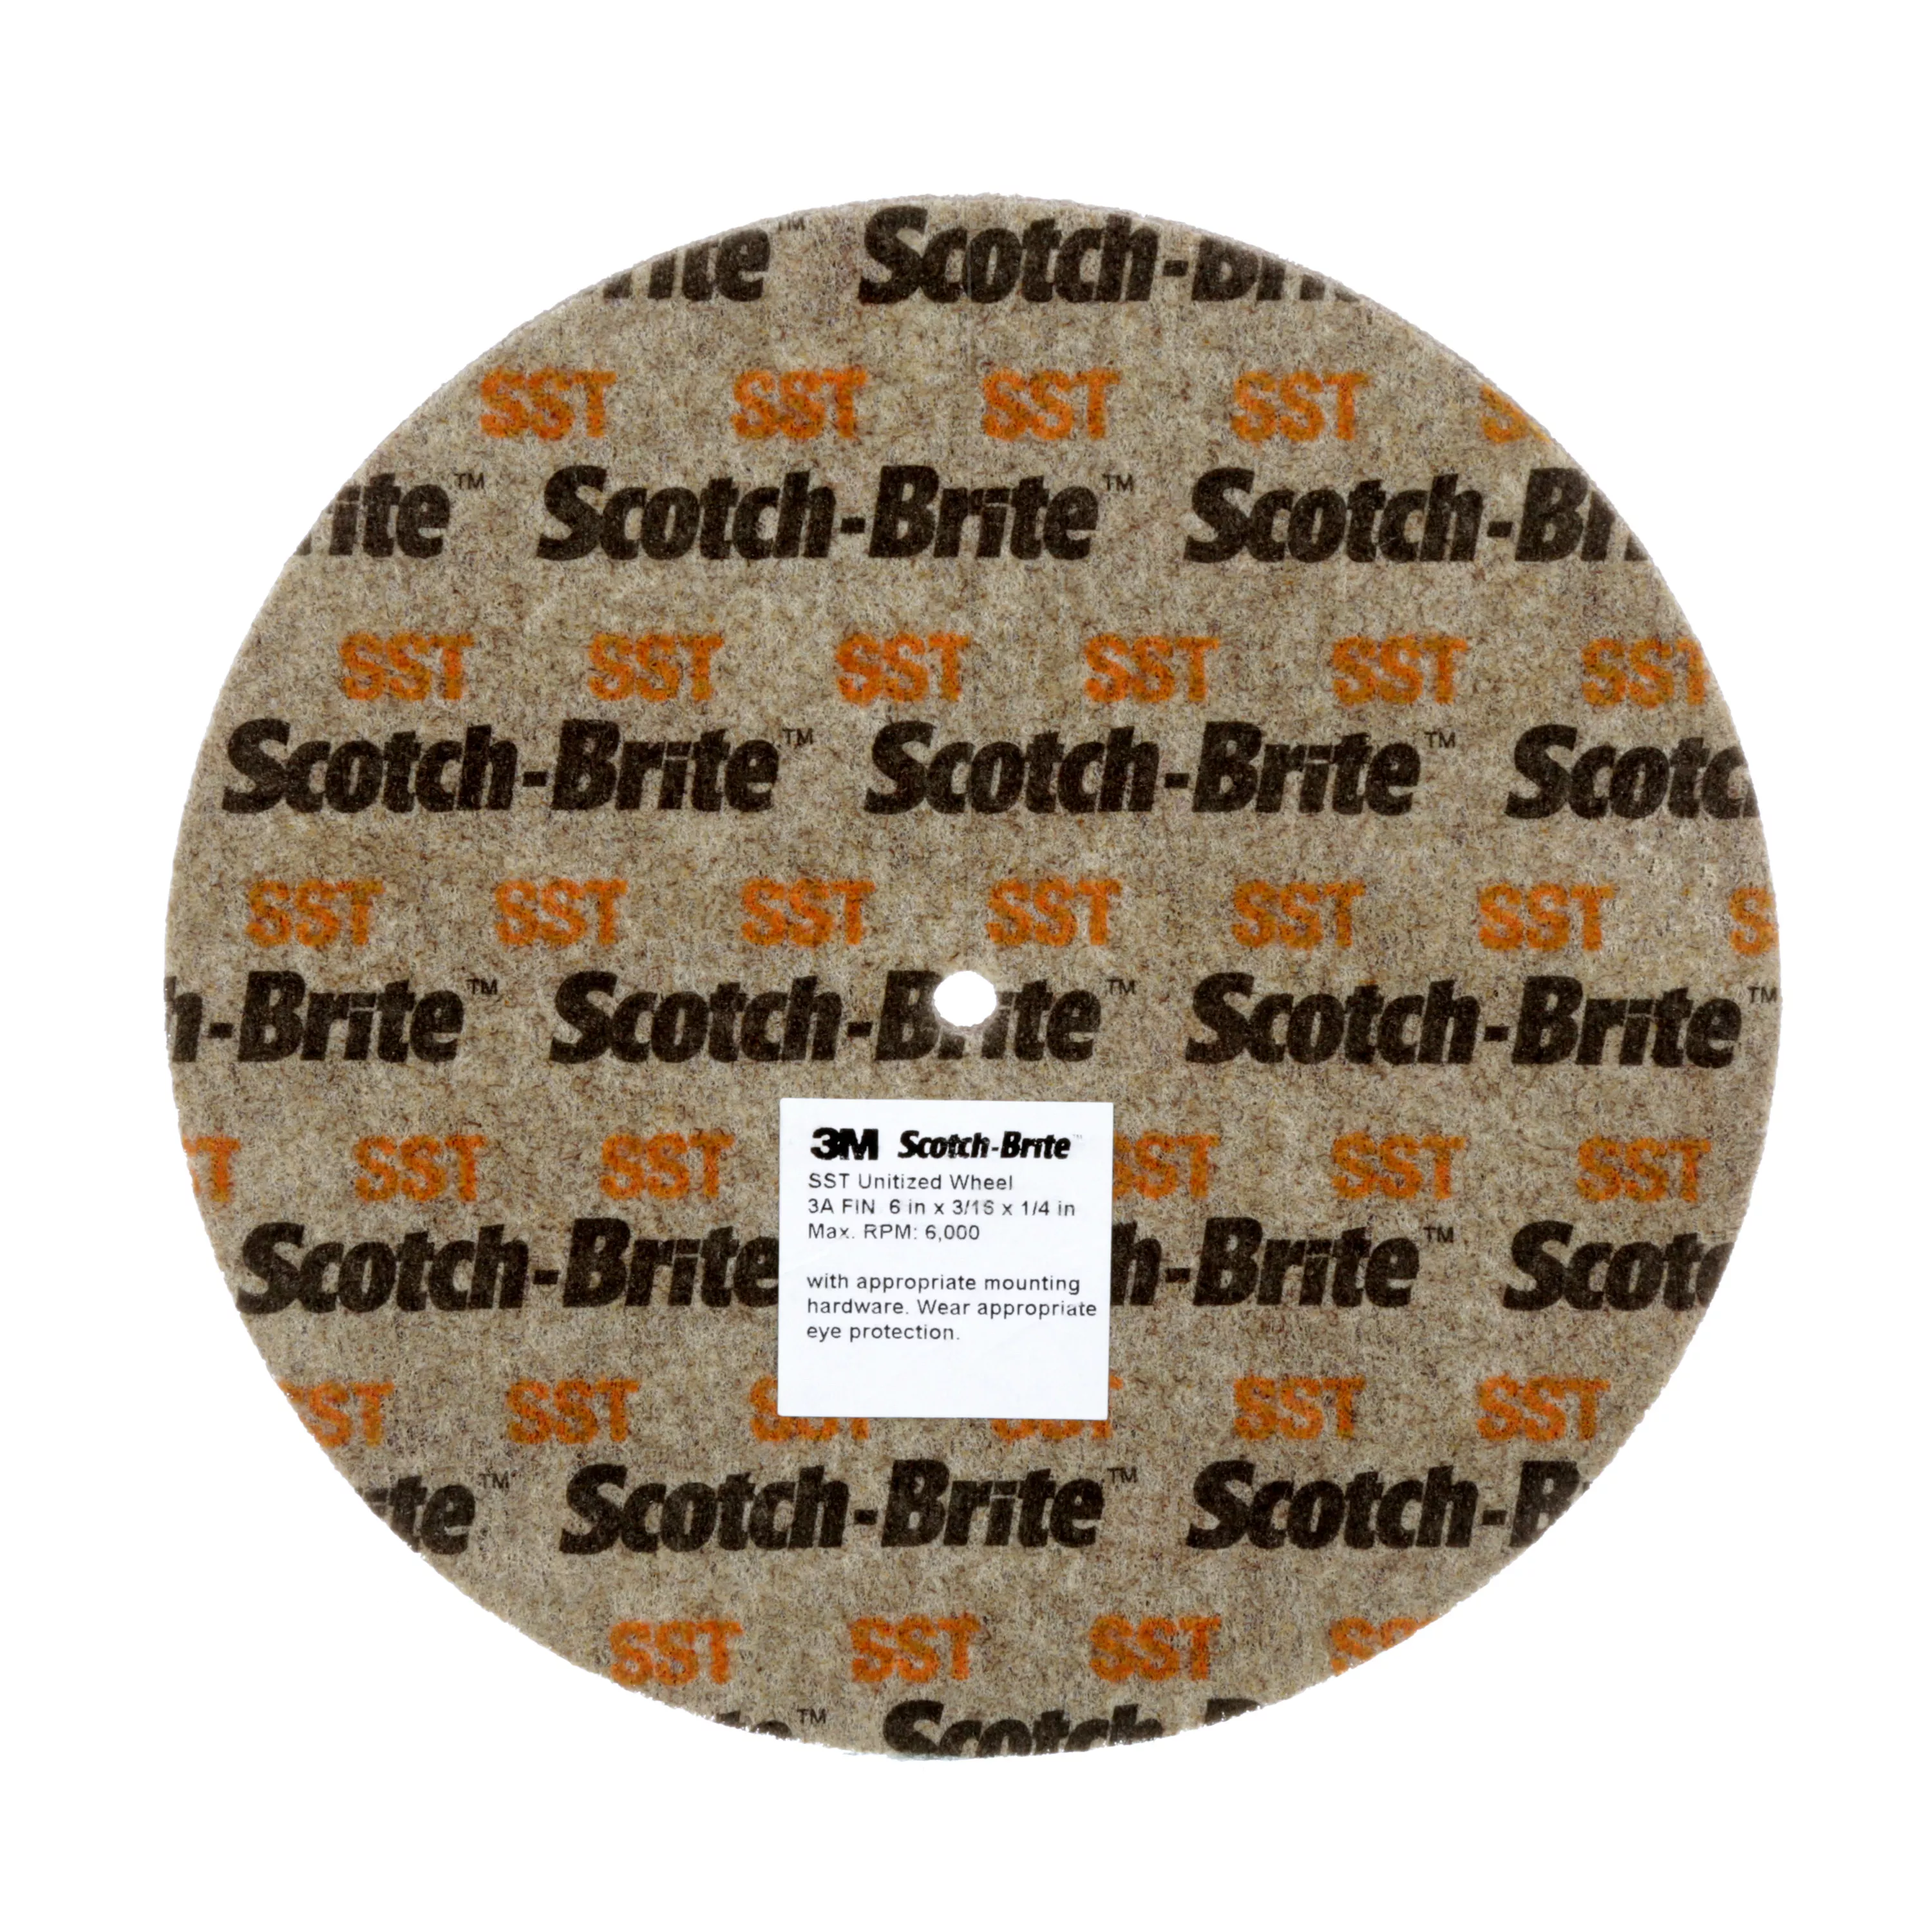 Scotch-Brite™ SST Unitized Wheel, 6 in x 3/16 in x 1/4 in, 3A FIN, 10
ea/Case